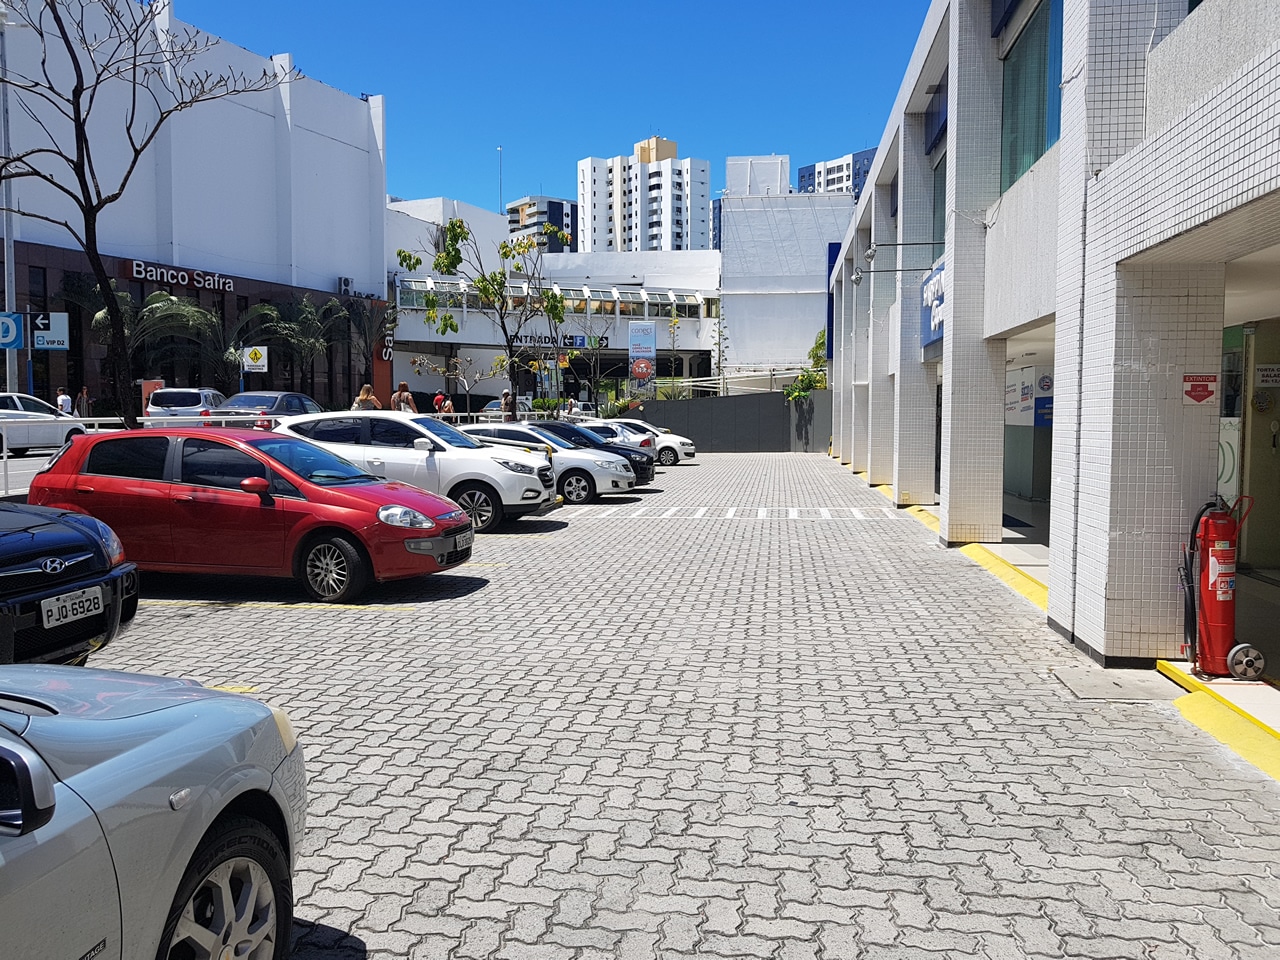 Piso UNI-STEIN Ref. 6 aplicado na obra do Edifício Capemi, localizado na Avenida ACM, em Salvador, Bahia.